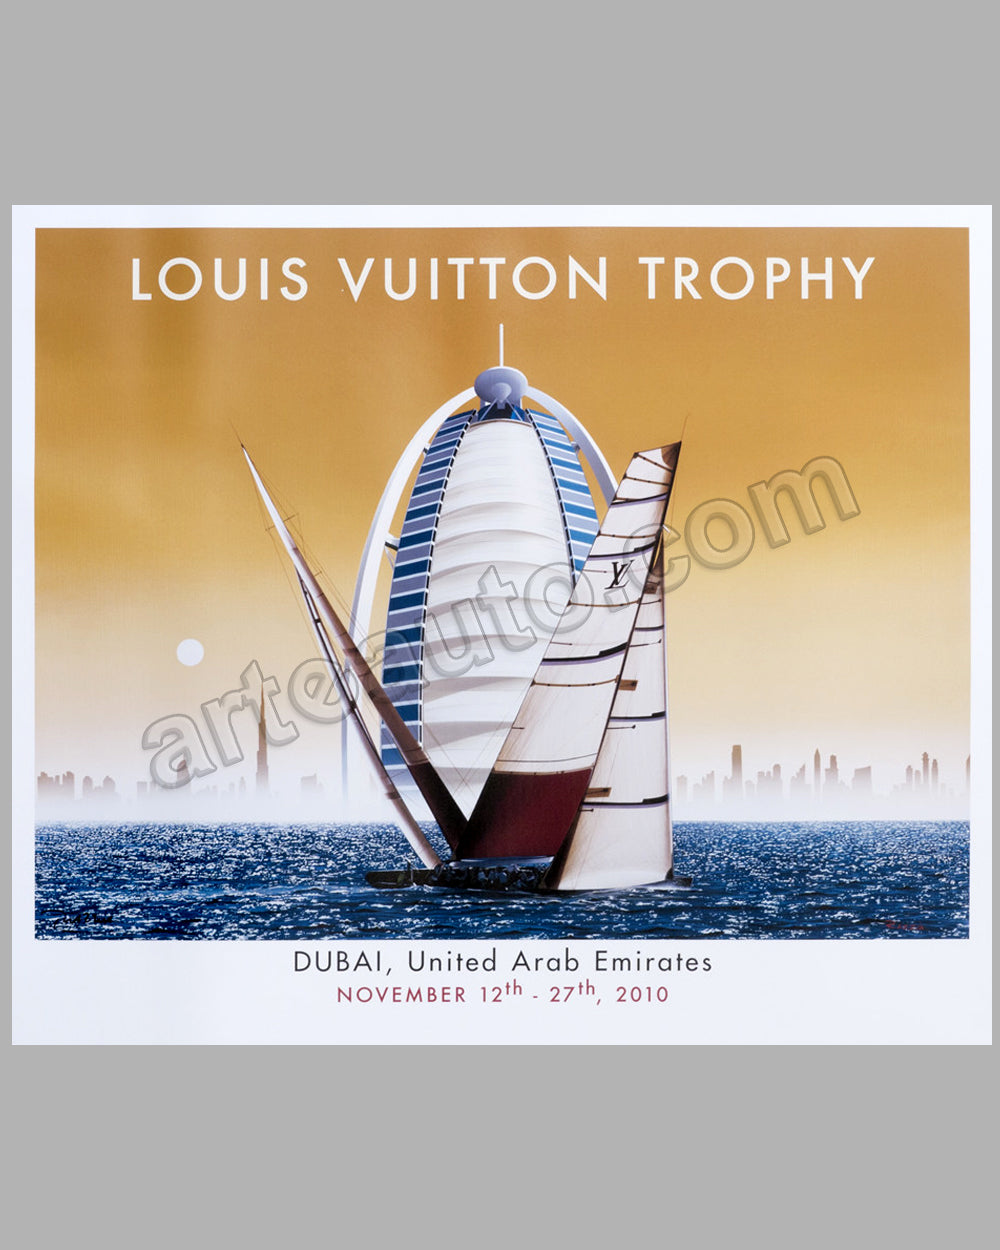 Louis Vuitton Classic China Run 2008 Large Poster by Razzia - l'art et  l'automobile